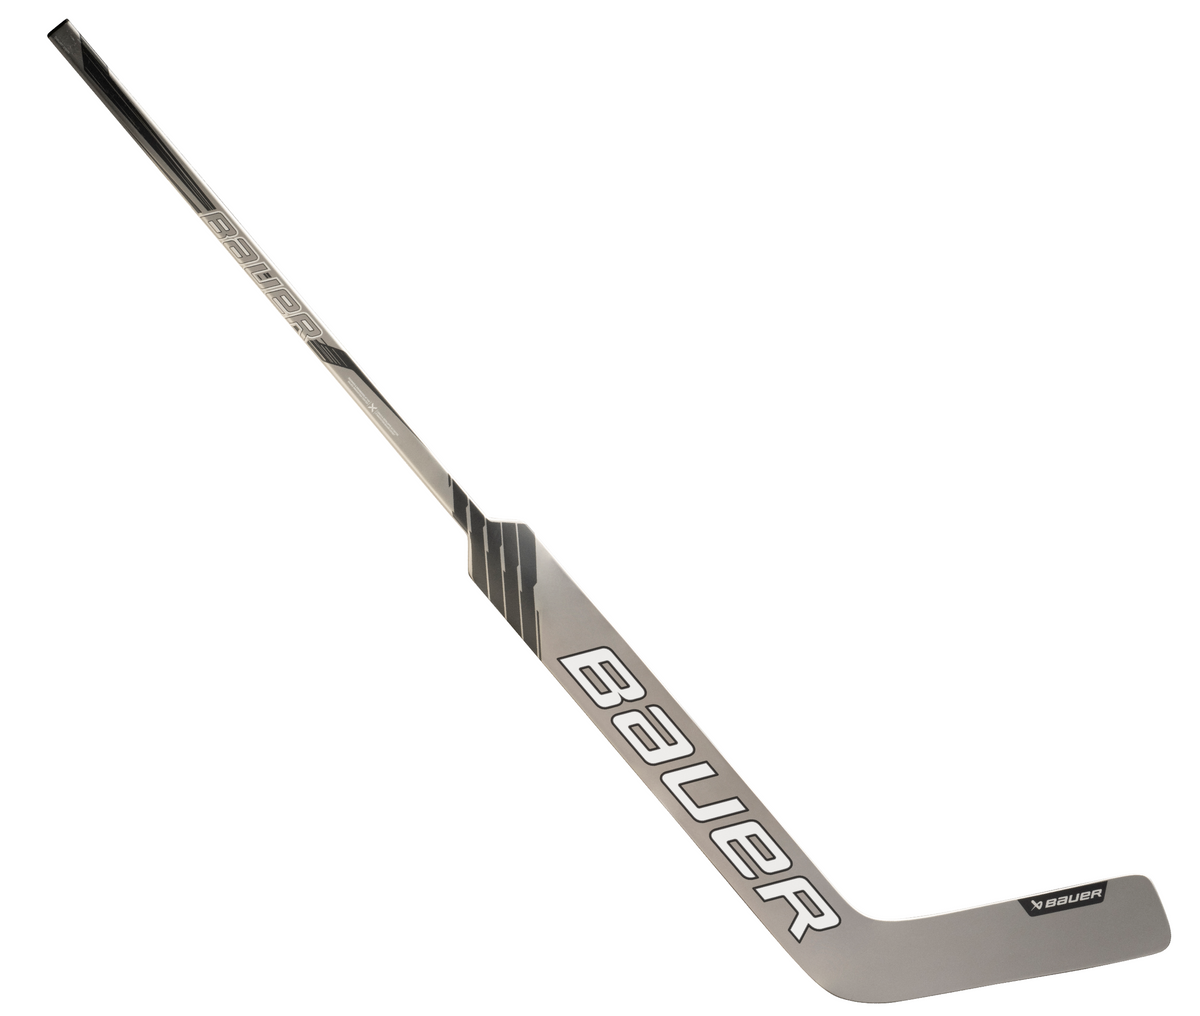 Bauer GSX 2023 Senior Goalie Stick (Silver/Black)